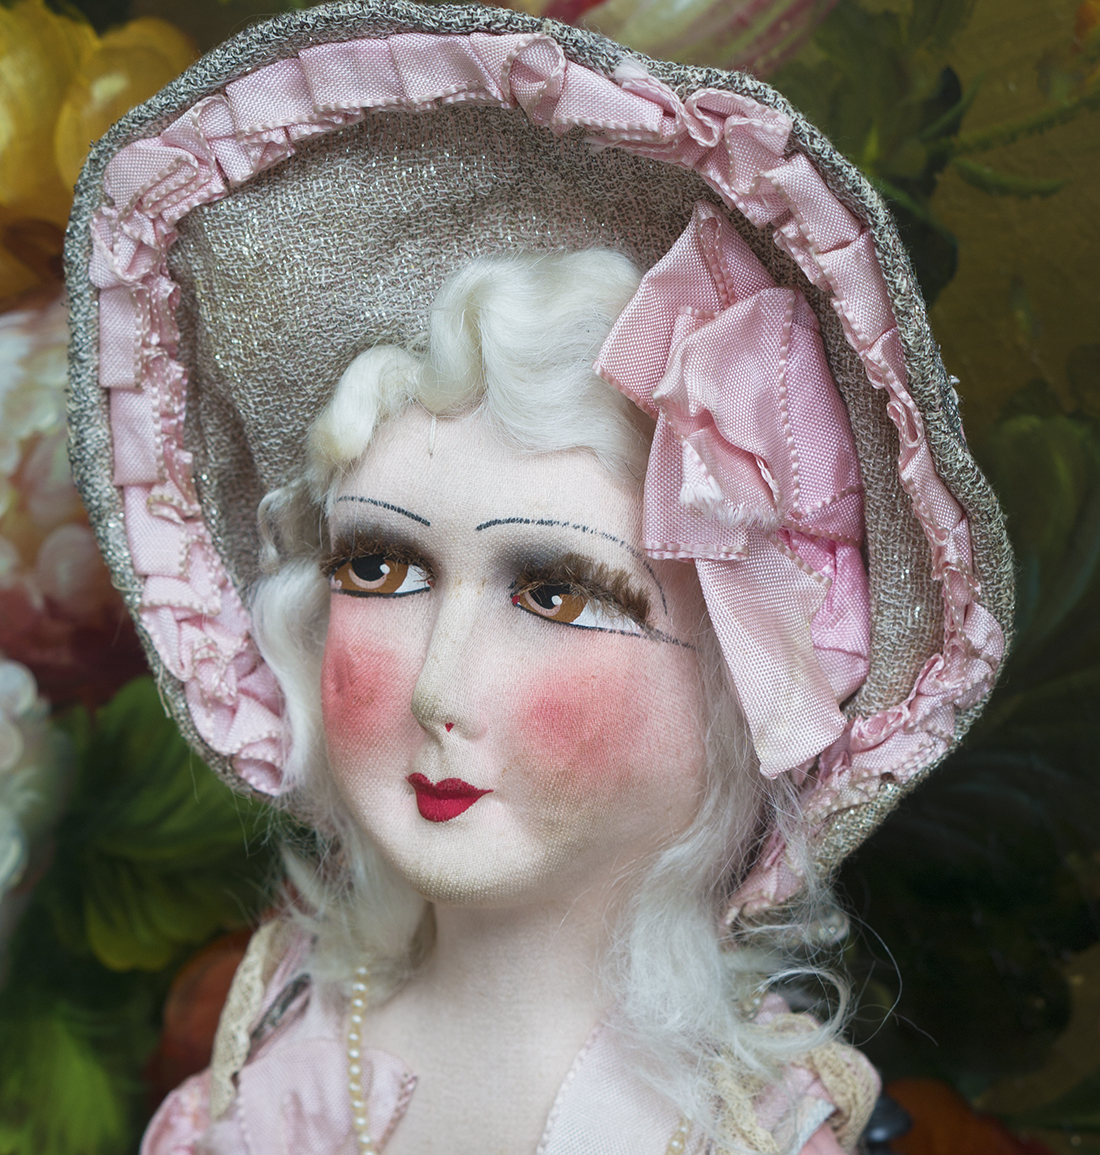 French Salon doll